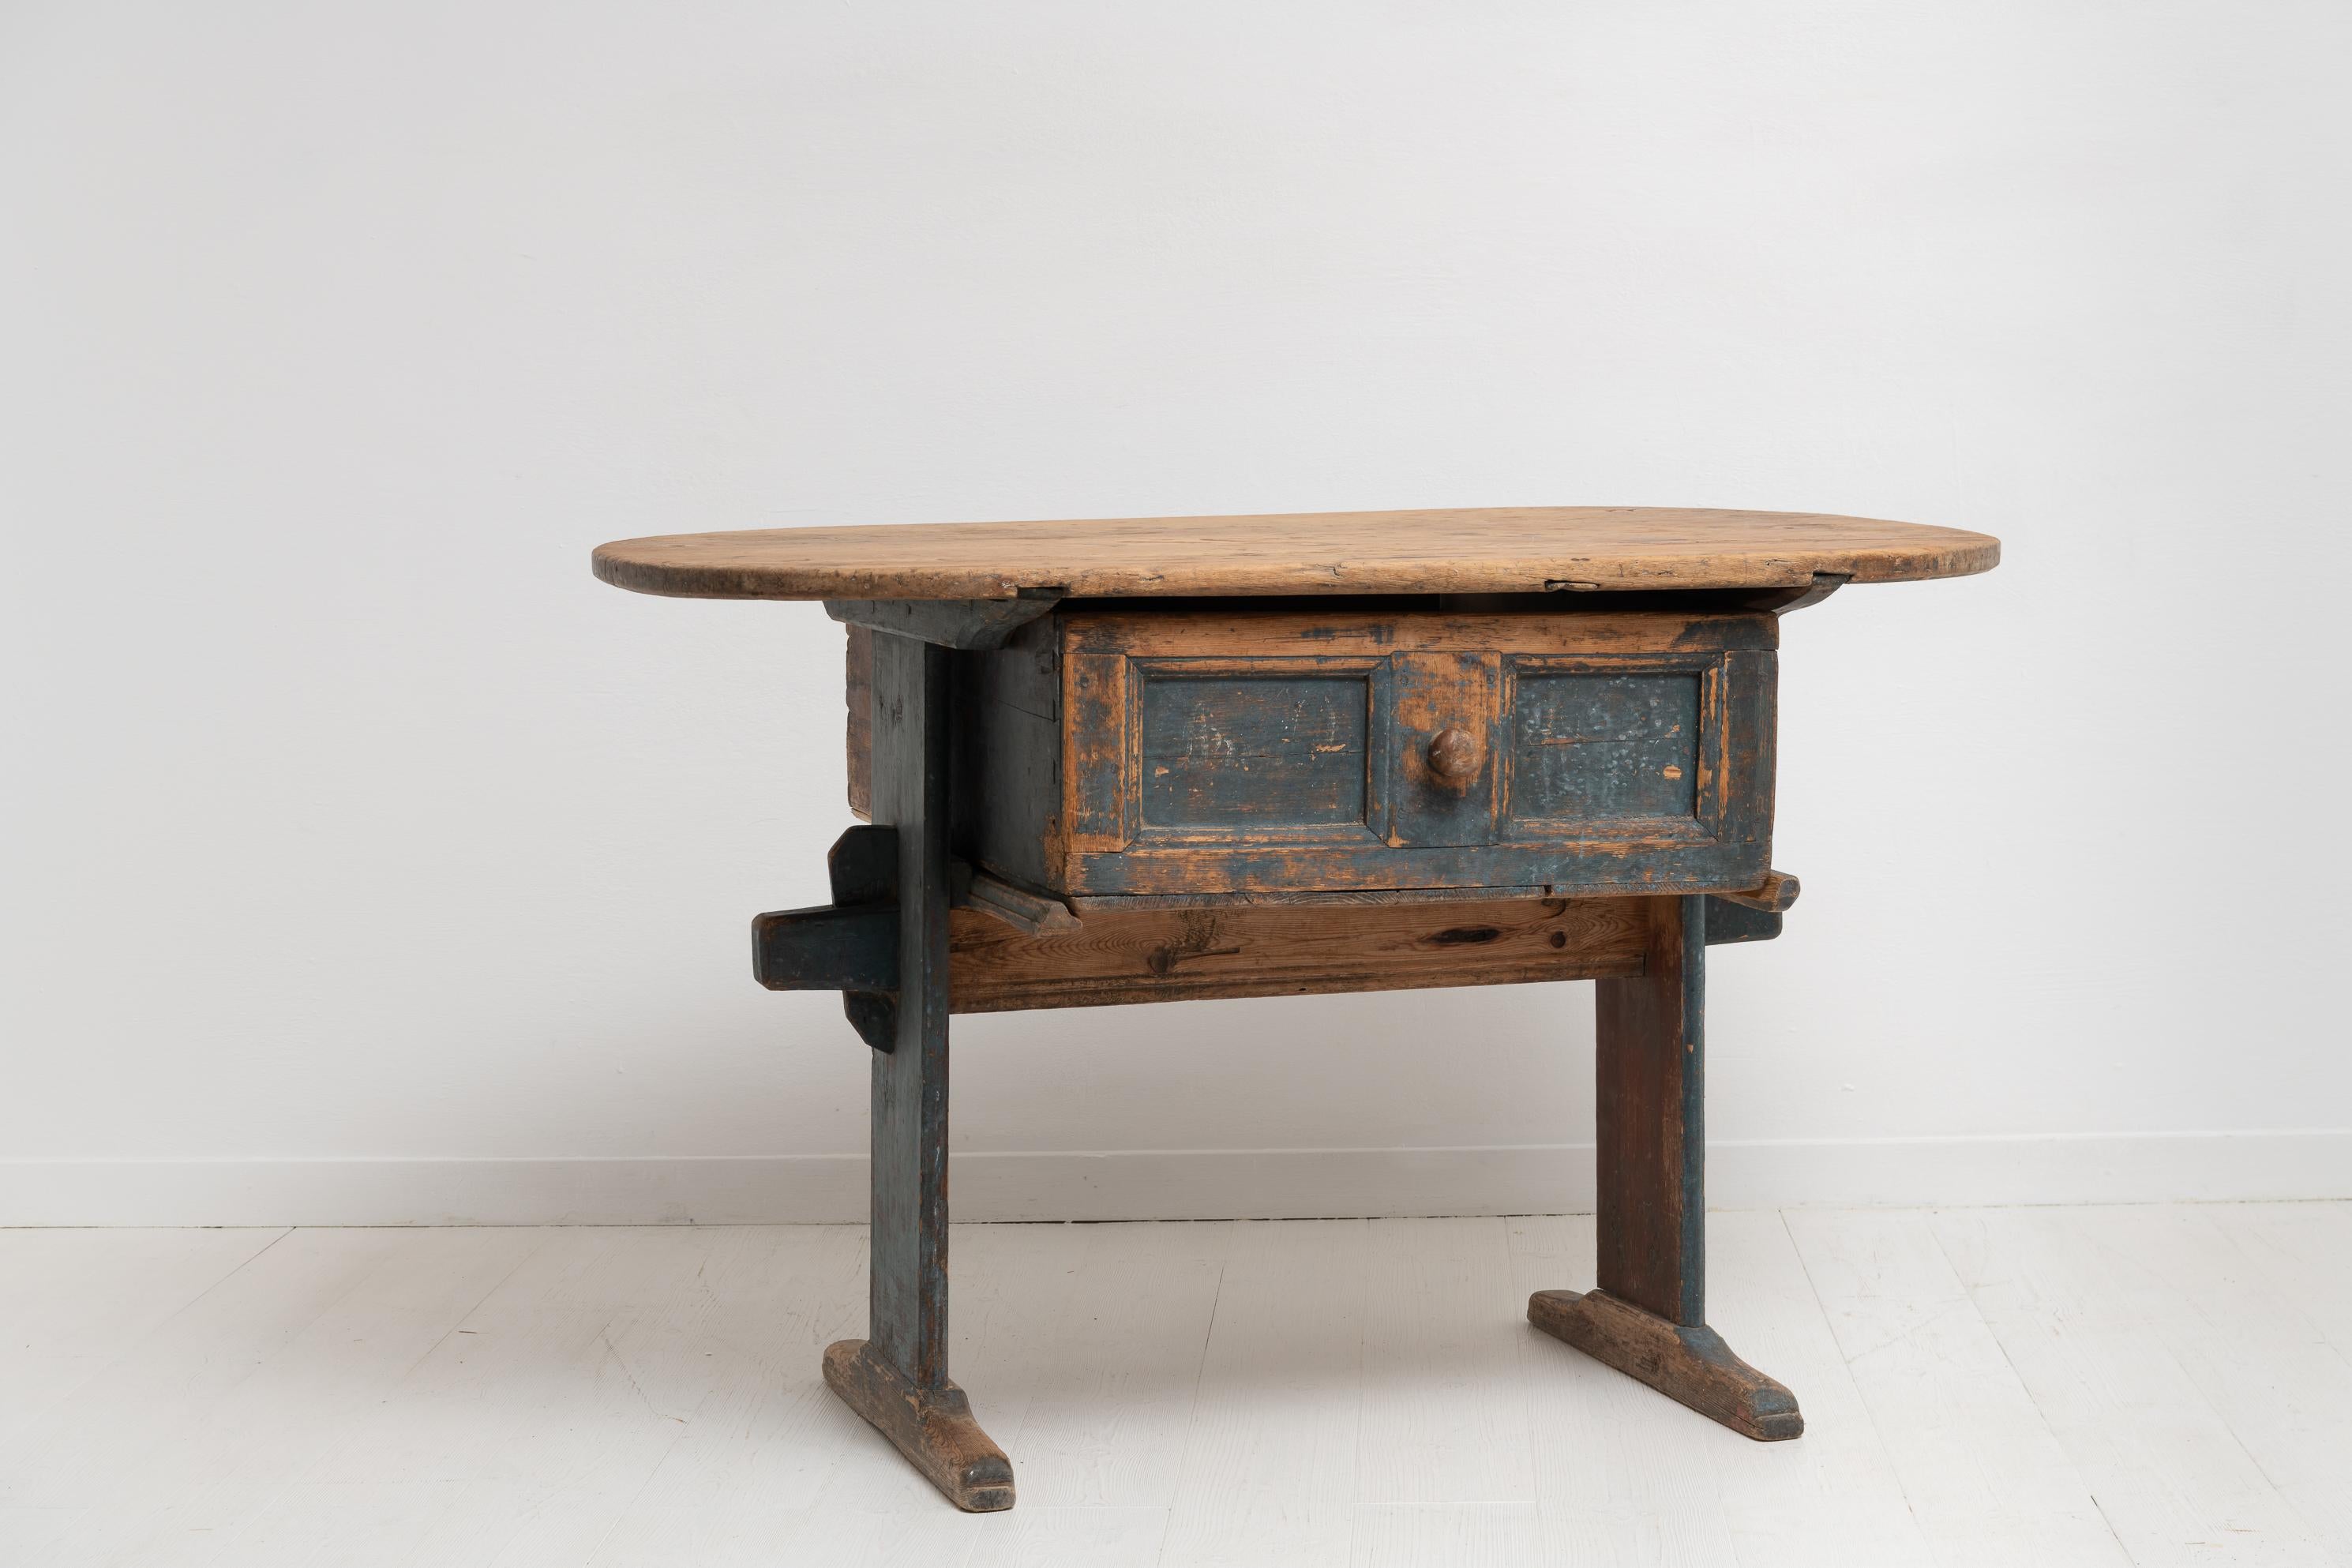 Folk Art Landhaustisch aus Nordschweden, hergestellt aus Kiefer in den späten 1700er Jahren. Der charmante Tisch ist ein ungewöhnliches Landhausmöbel in originalgetreuem Zustand mit Originallackierung. Authentische Abnutzung nach fast 250 Jahren